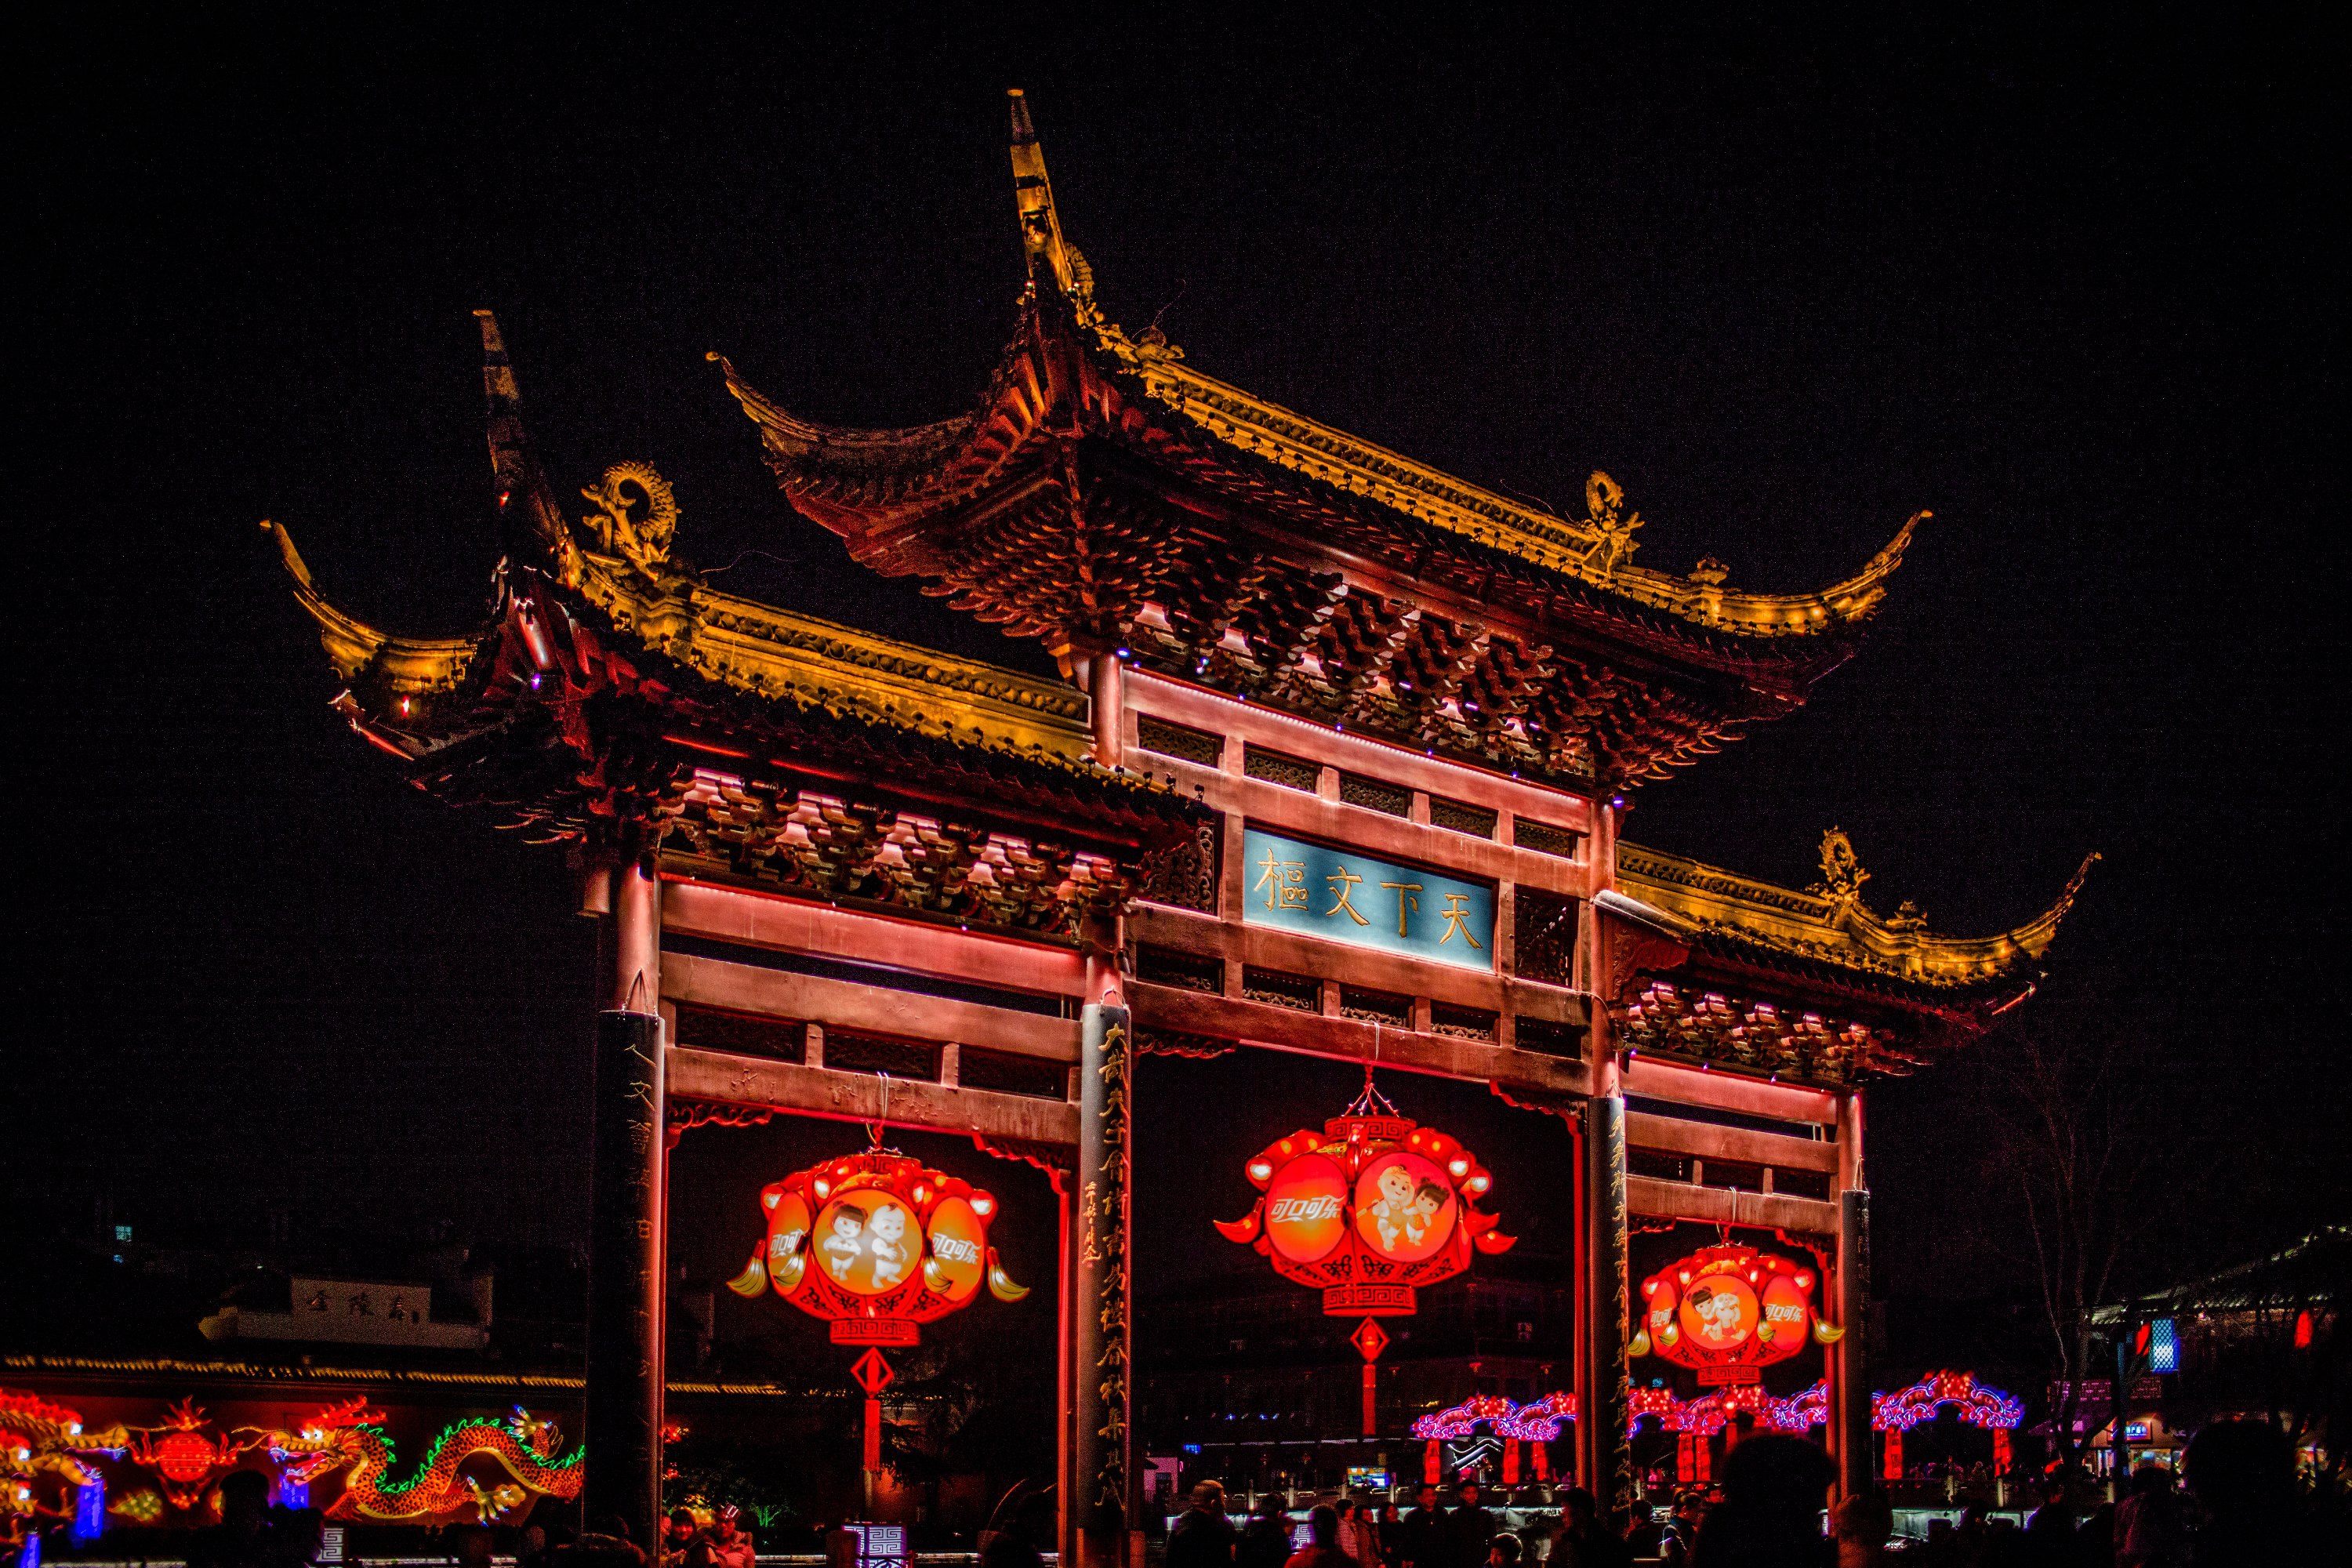 夫子庙 Confucius Temple - 中国江苏南京景点